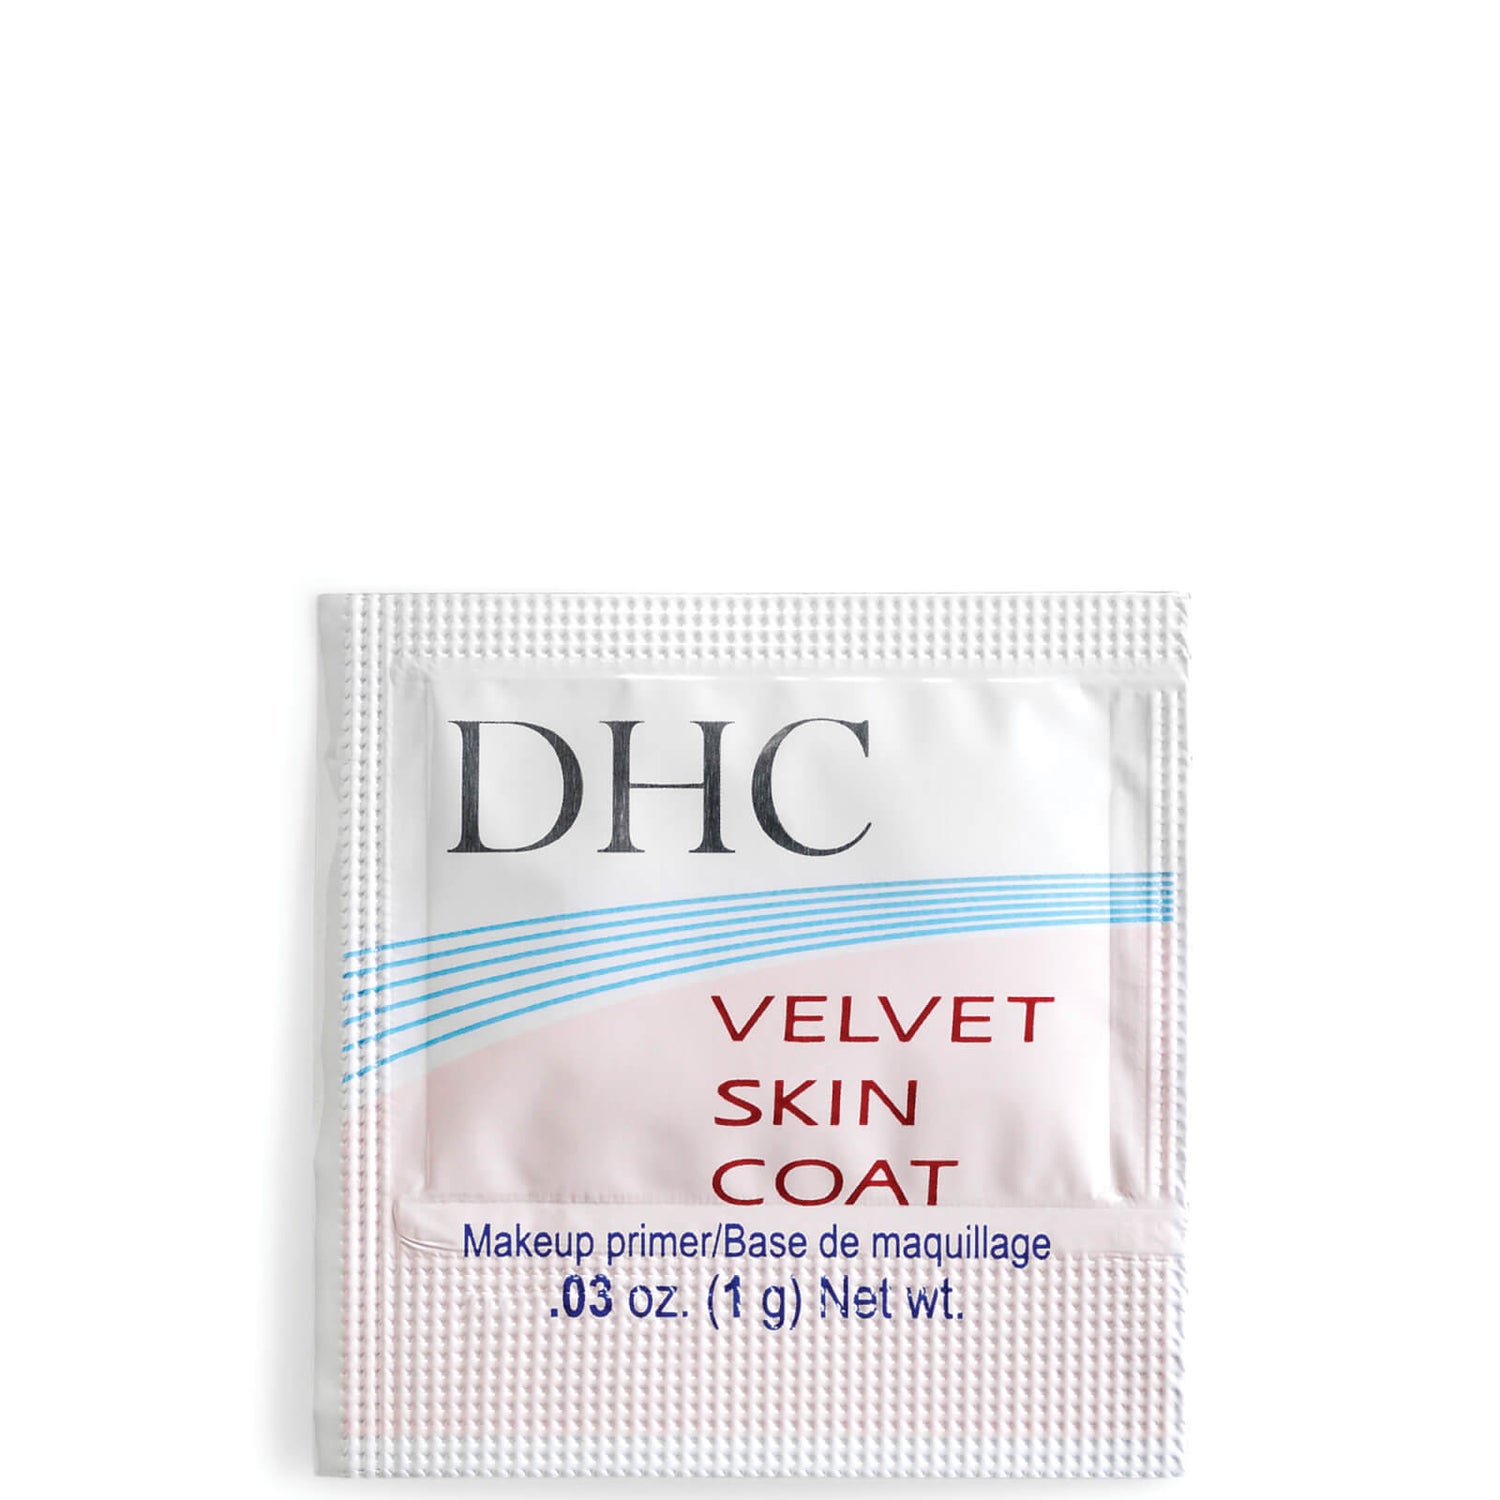 DHC Velvet Skin Coat Sample 1g (Worth $3.85)